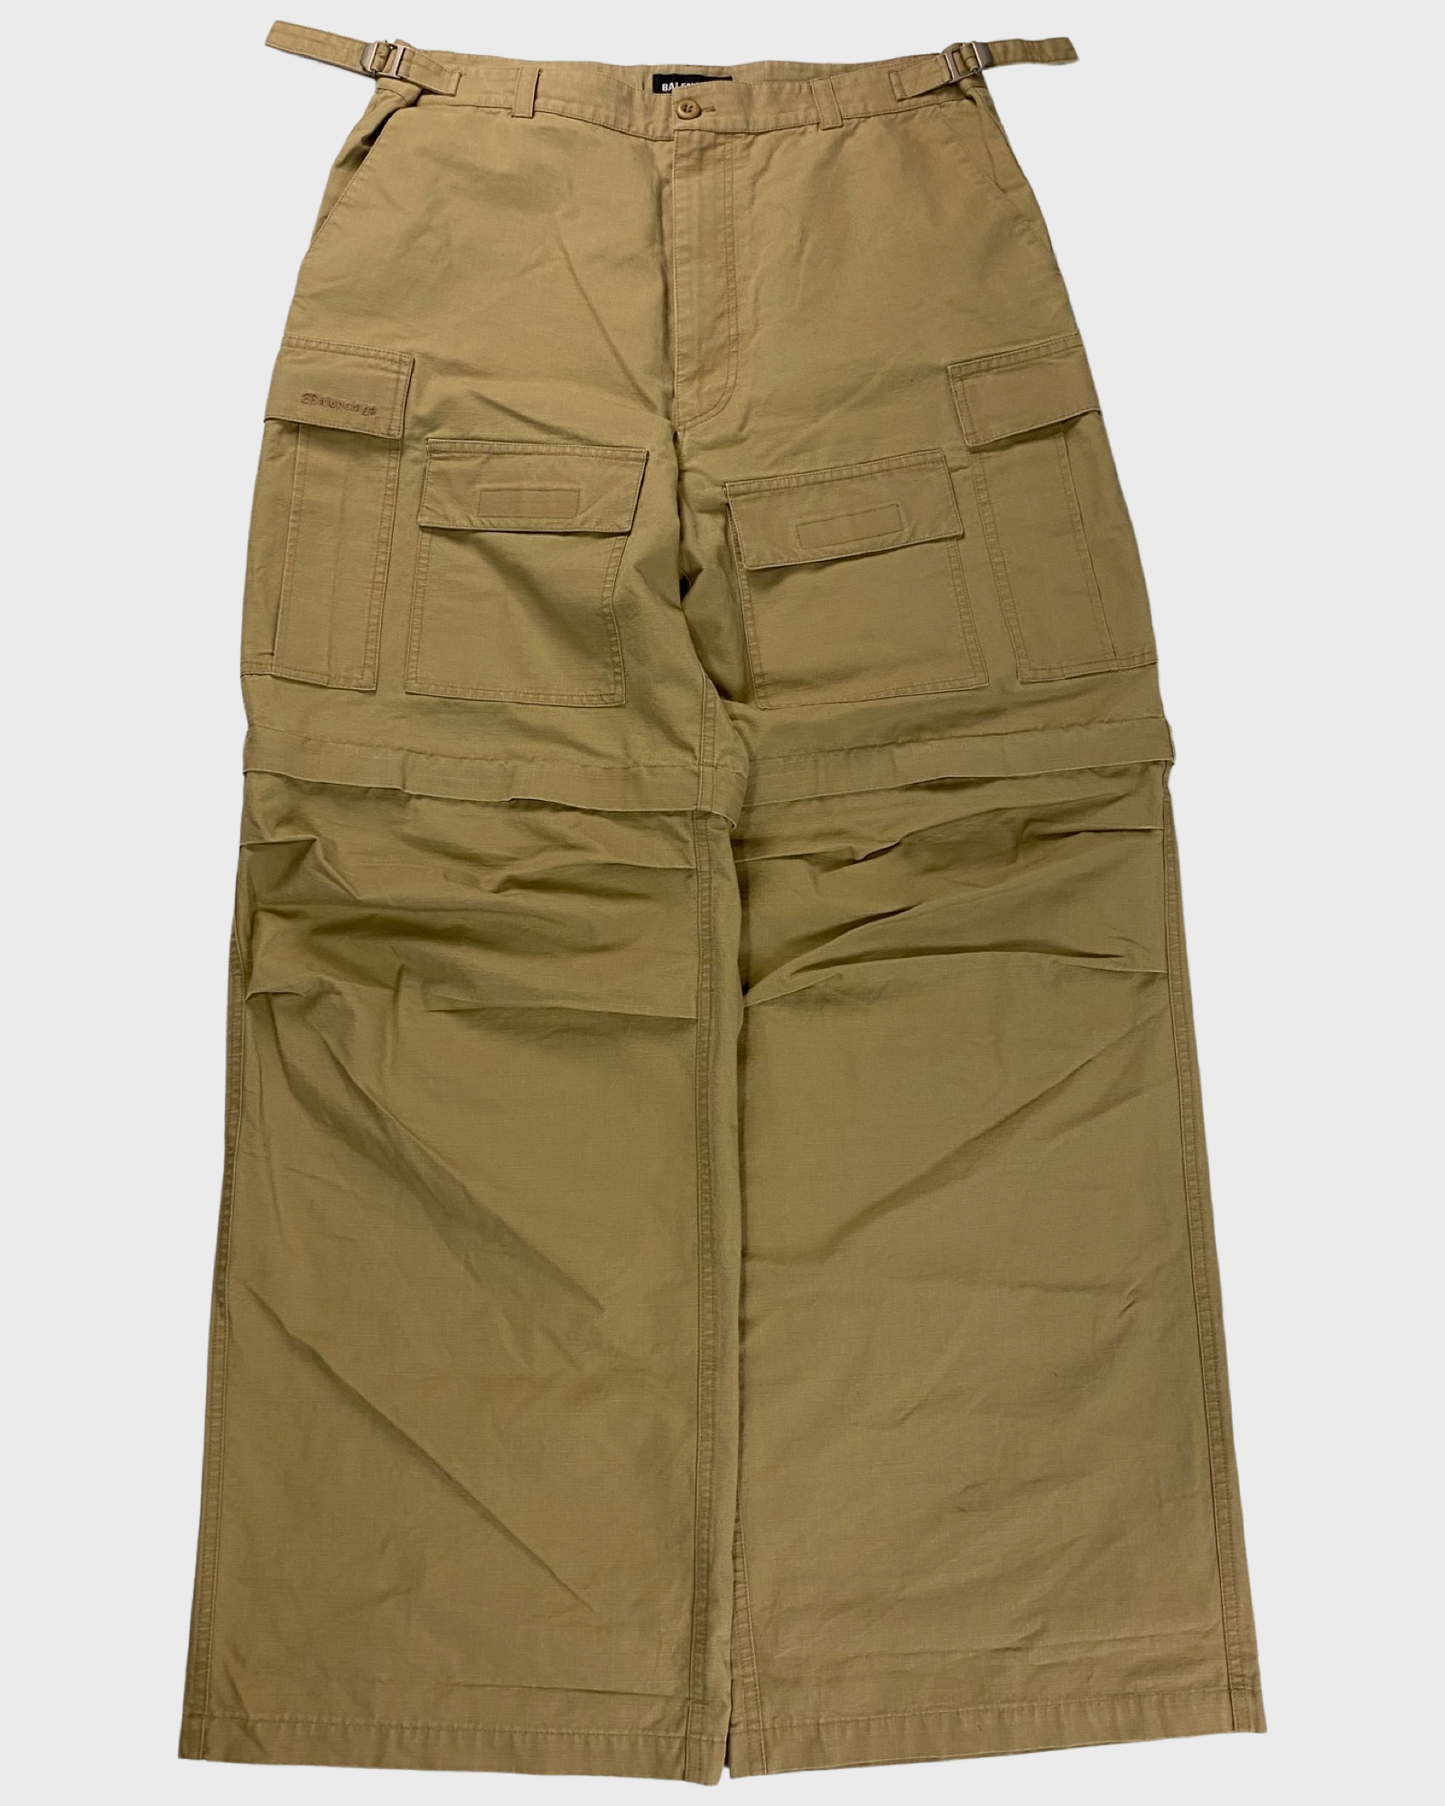 Balenciaga AW20 Cargo pants in tan SZ:48|50